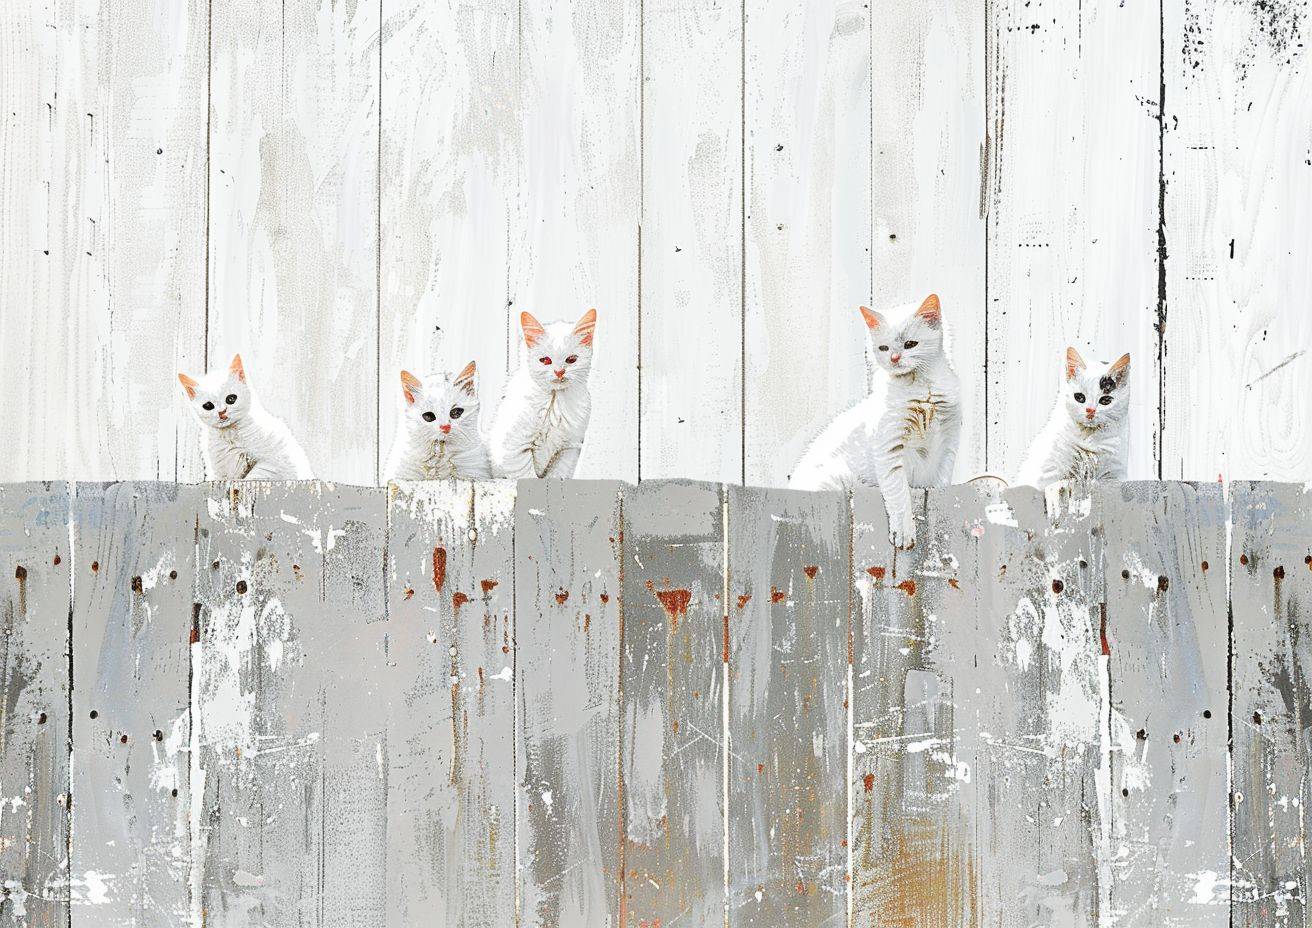 木製のフェンスに描かれた猫の絵を描いた子供の絵のシンプルなカートゥーン画像、白いペンキ、木の質感、ネガティブスペース、データモッシンググリッチ効果